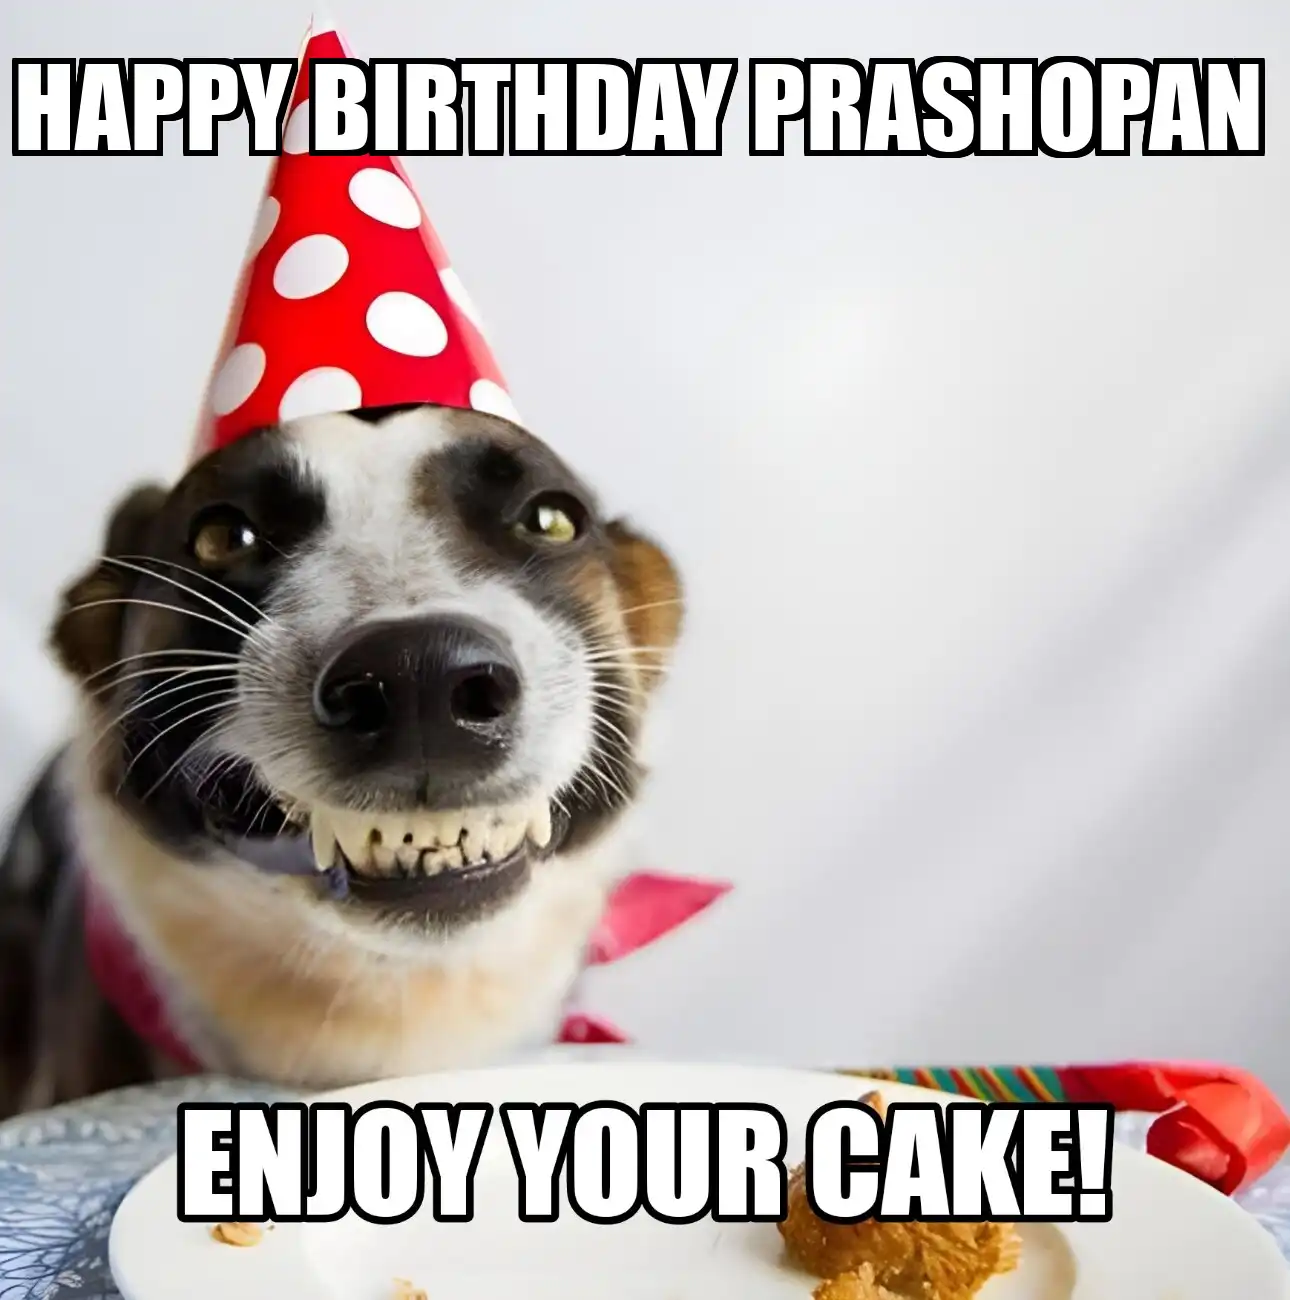 Happy Birthday Prashopan Enjoy Your Cake Dog Meme